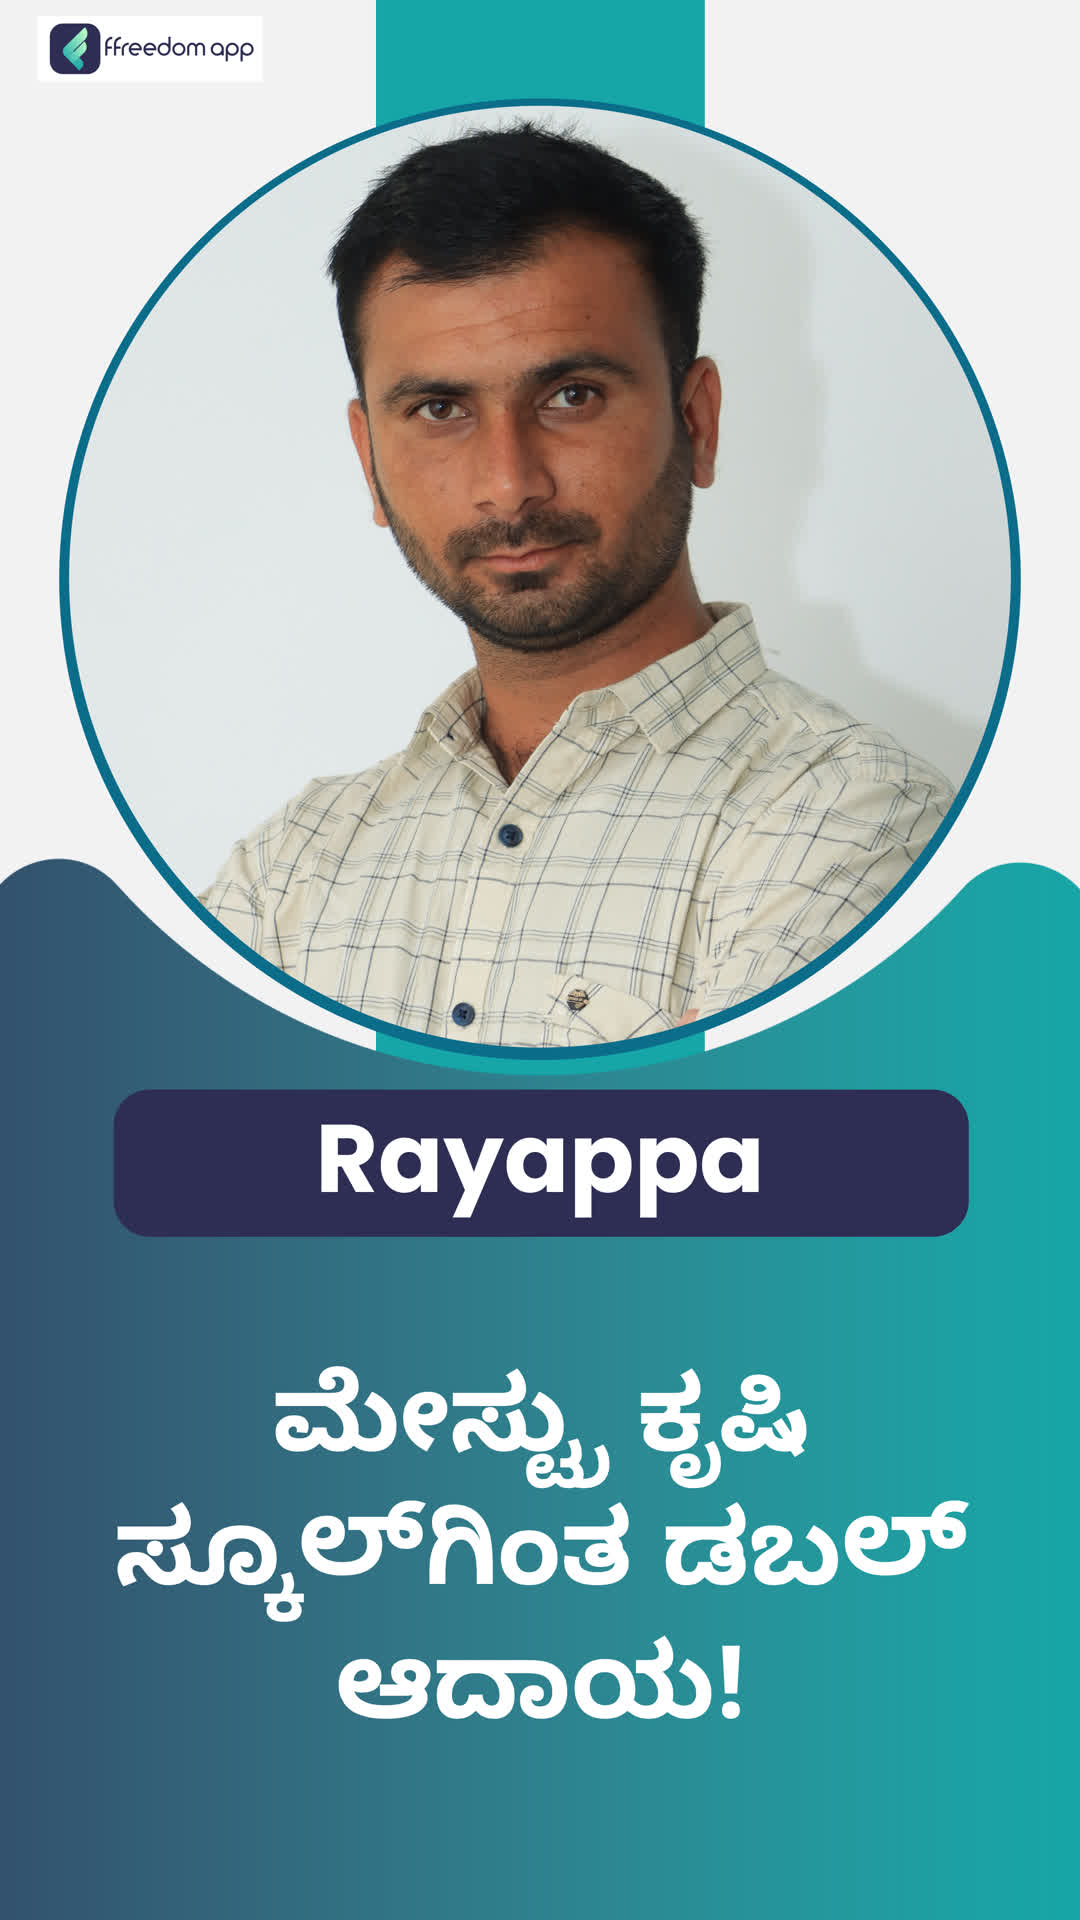 Rayappa's Honest Review of ffreedom app - Sangli ,Maharashtra